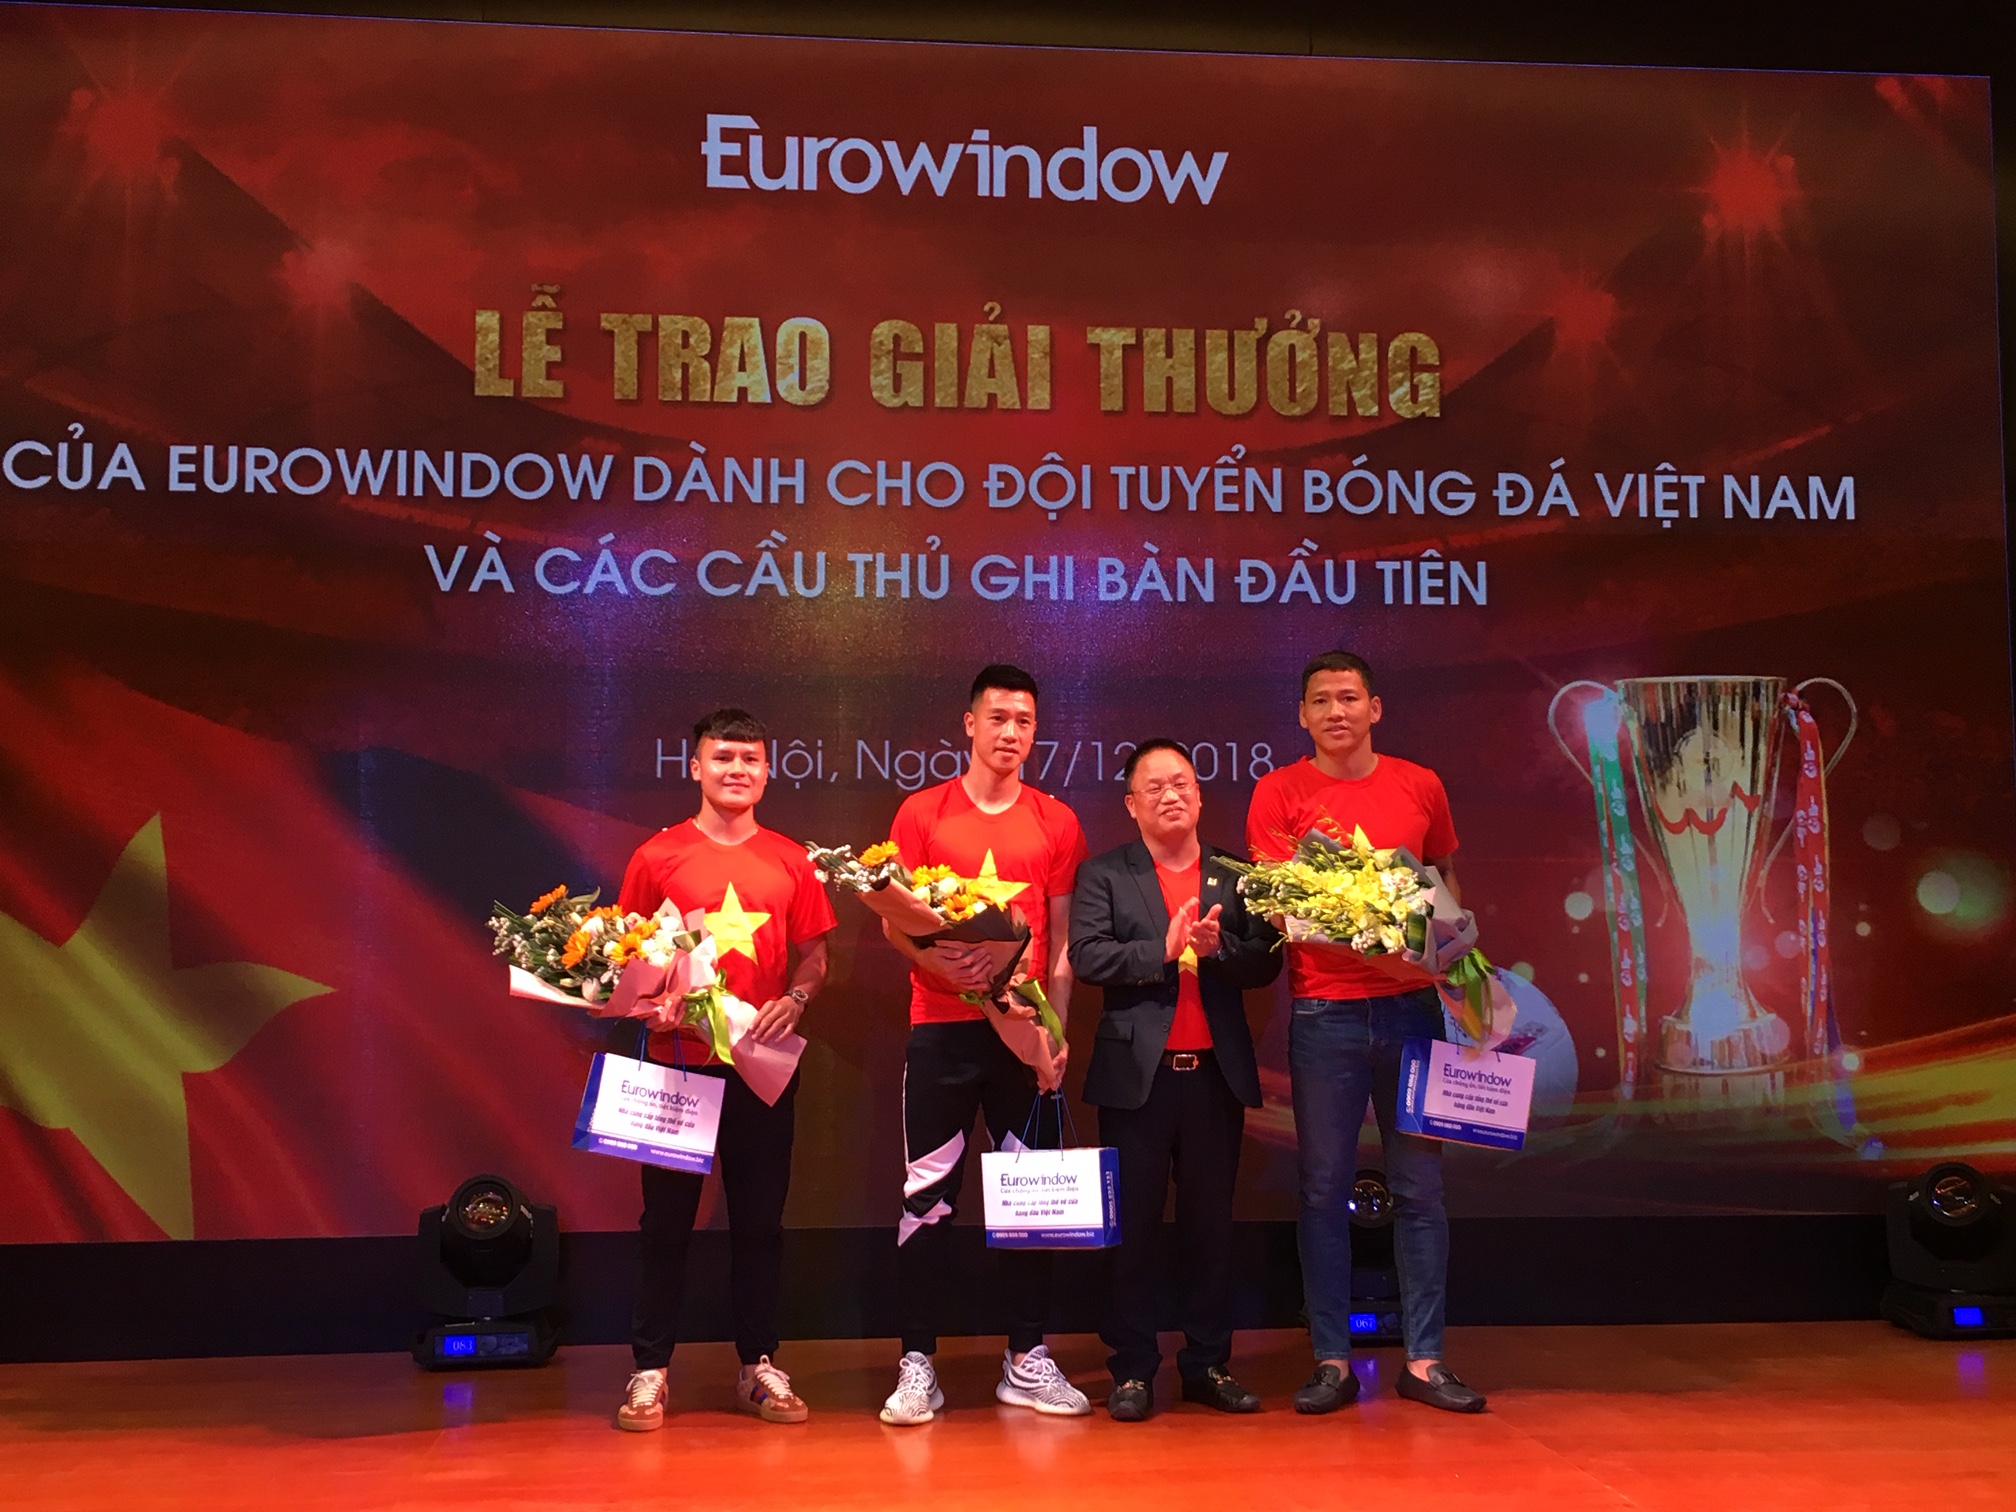 Các cầu thủ Việt Nam nhận cả núi tiền thưởng từ Eurowindow